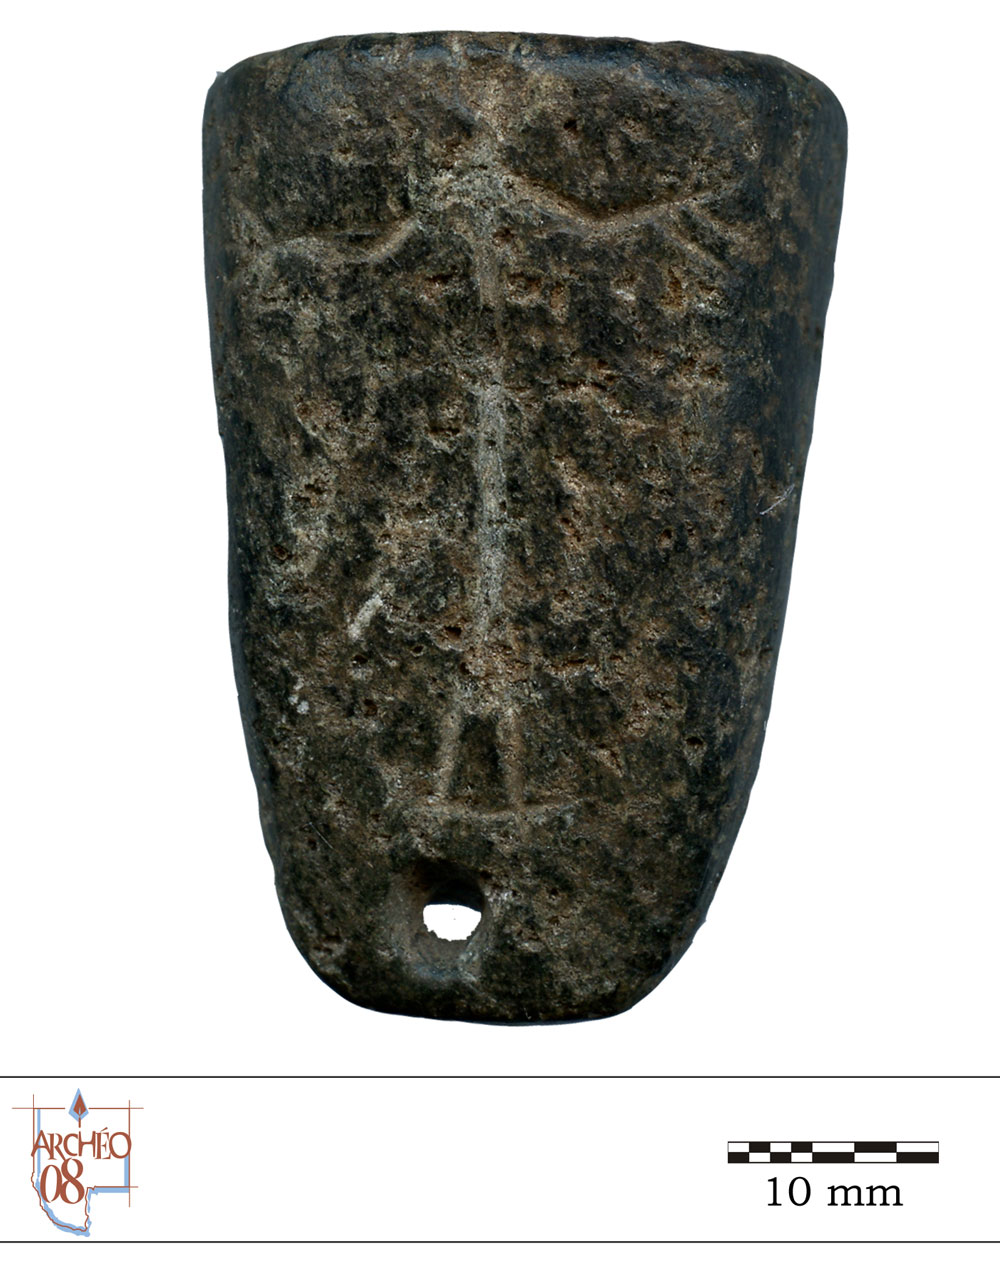 Photographie d'un fourneau de pipe en pierre. On distingue le dessin de deux figures anthropomorphes.